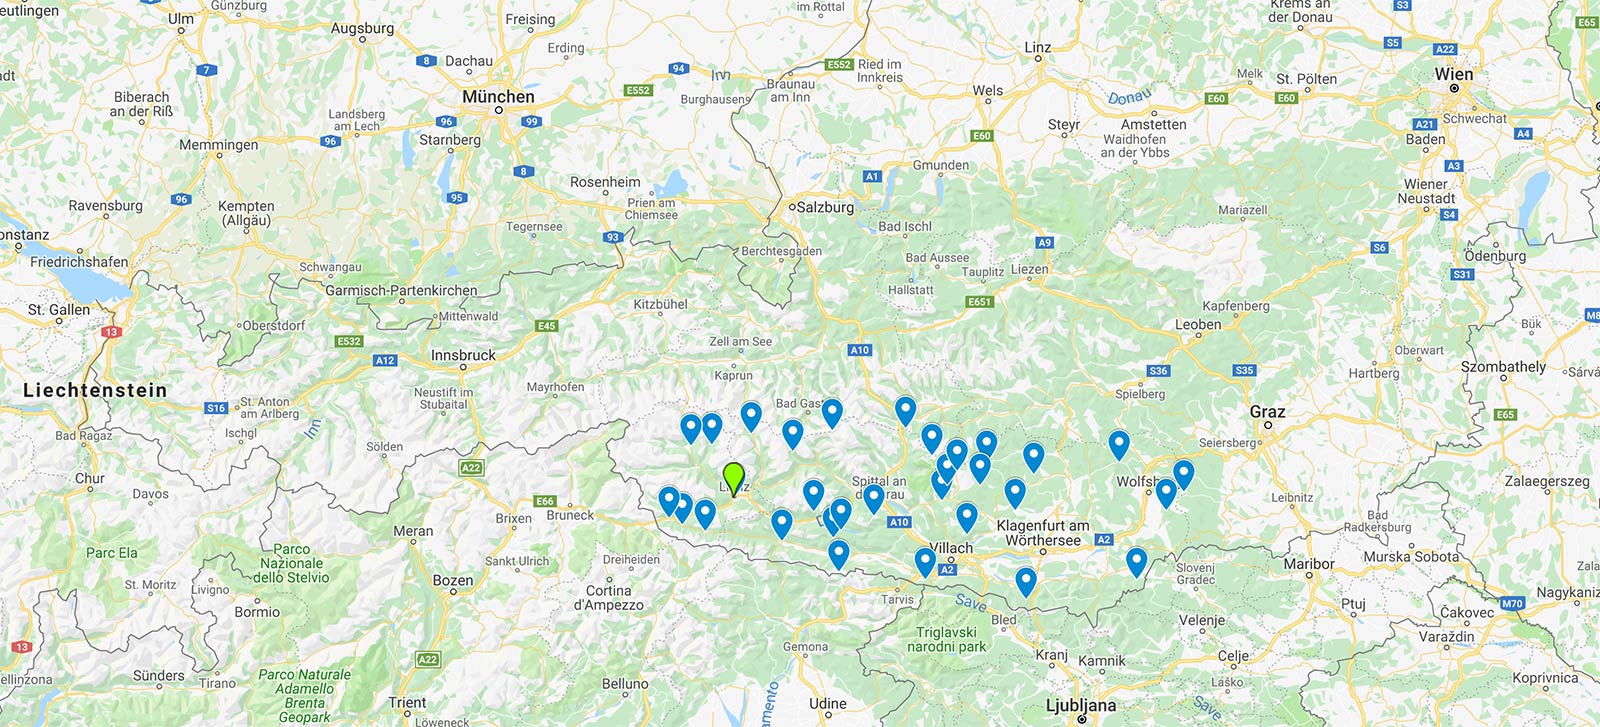 Übersicht: Die Gebiete des TopSkiPass - Kärnten & Osttirol 2019/2020